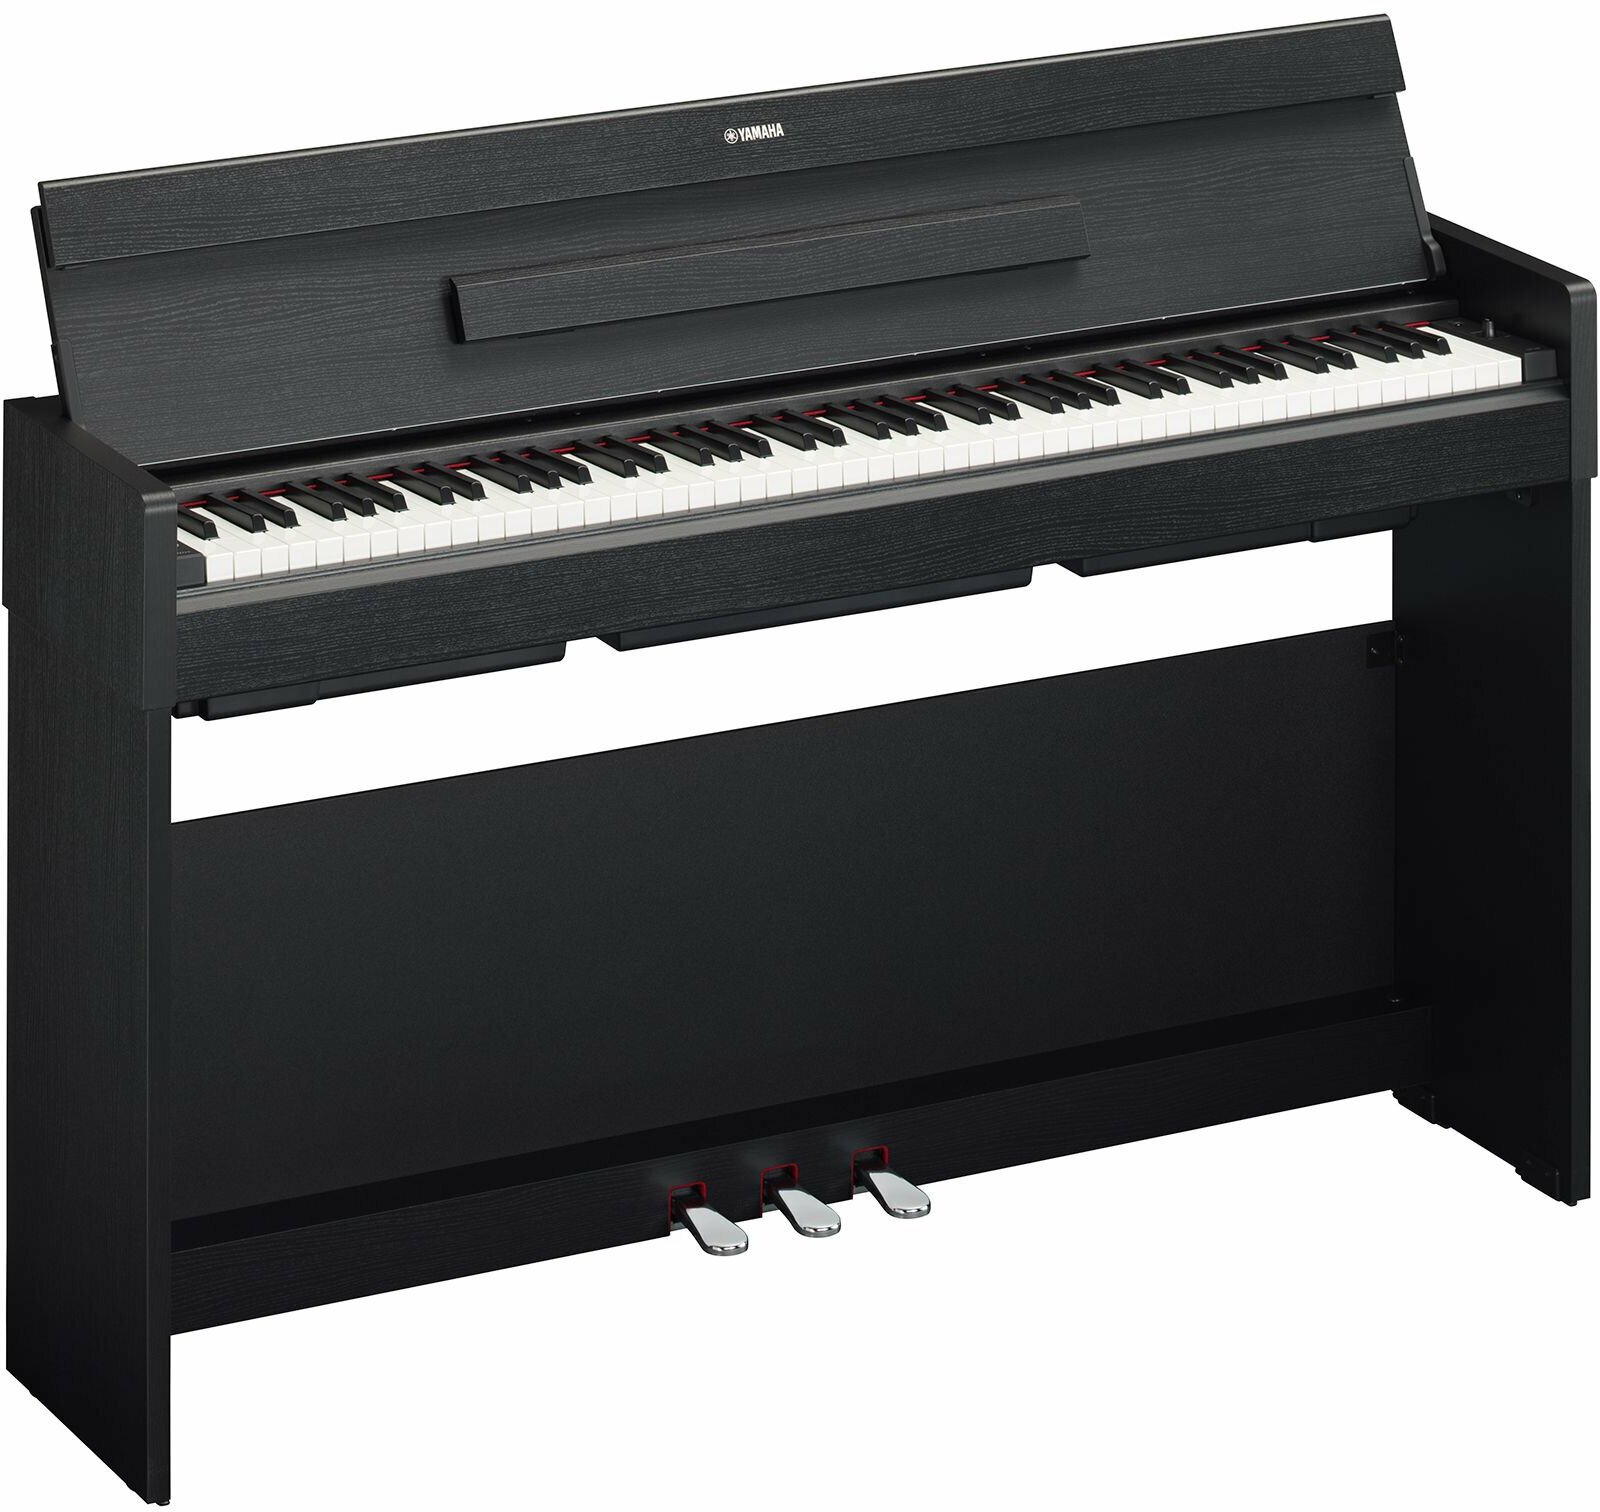 Ψηφιακό Πιάνο Yamaha YDP-S35 Black Ψηφιακό Πιάνο